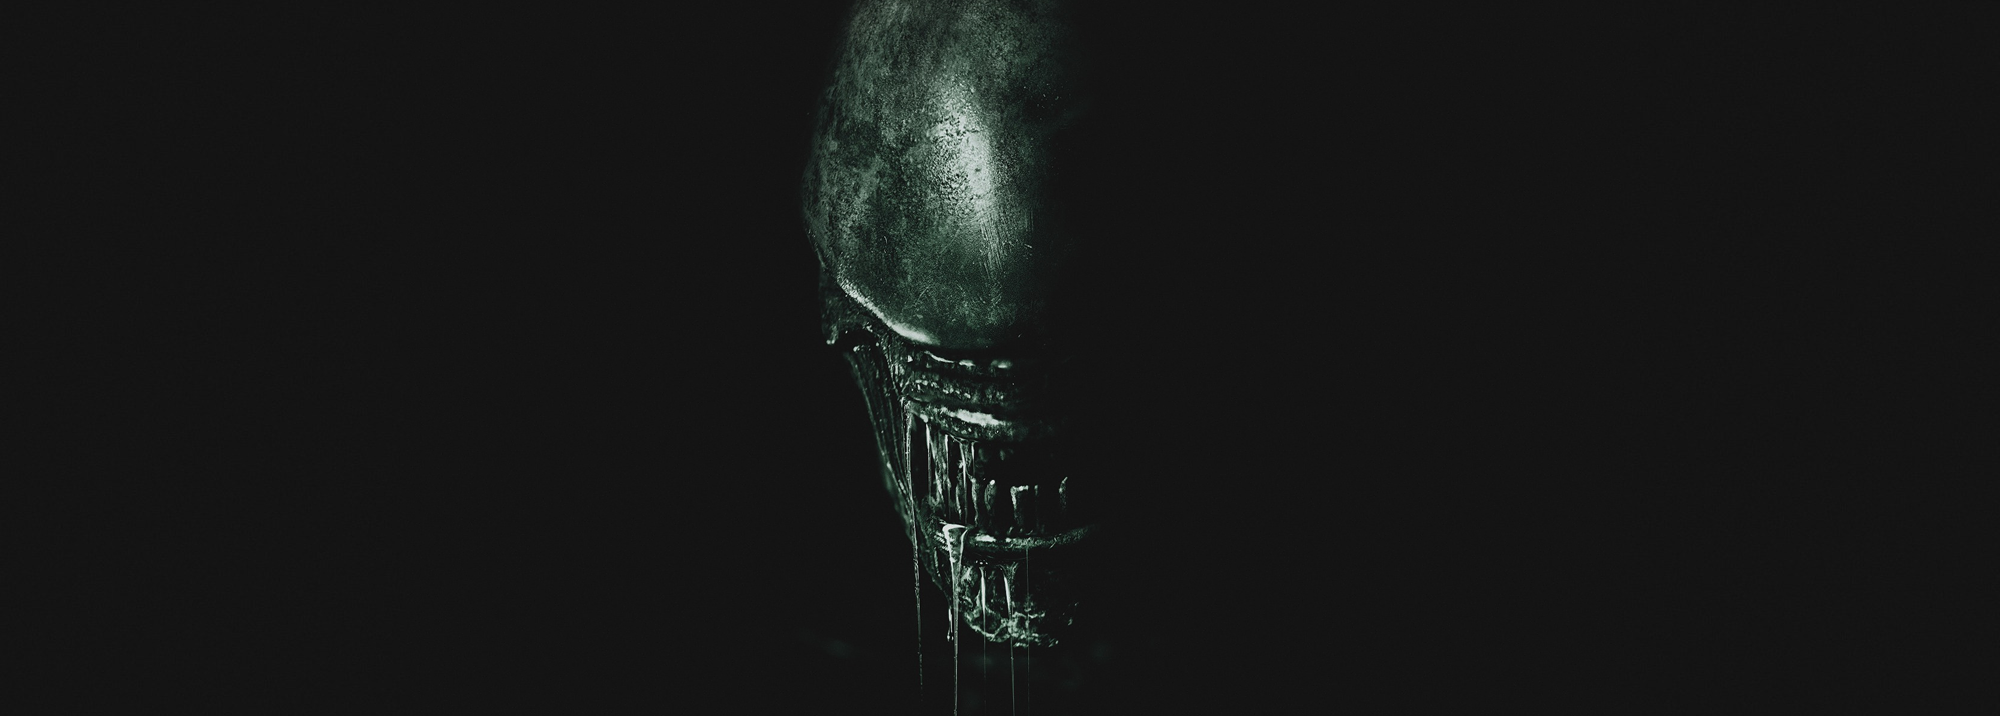 Bekijk hier de eerste Alien Covenant trailer